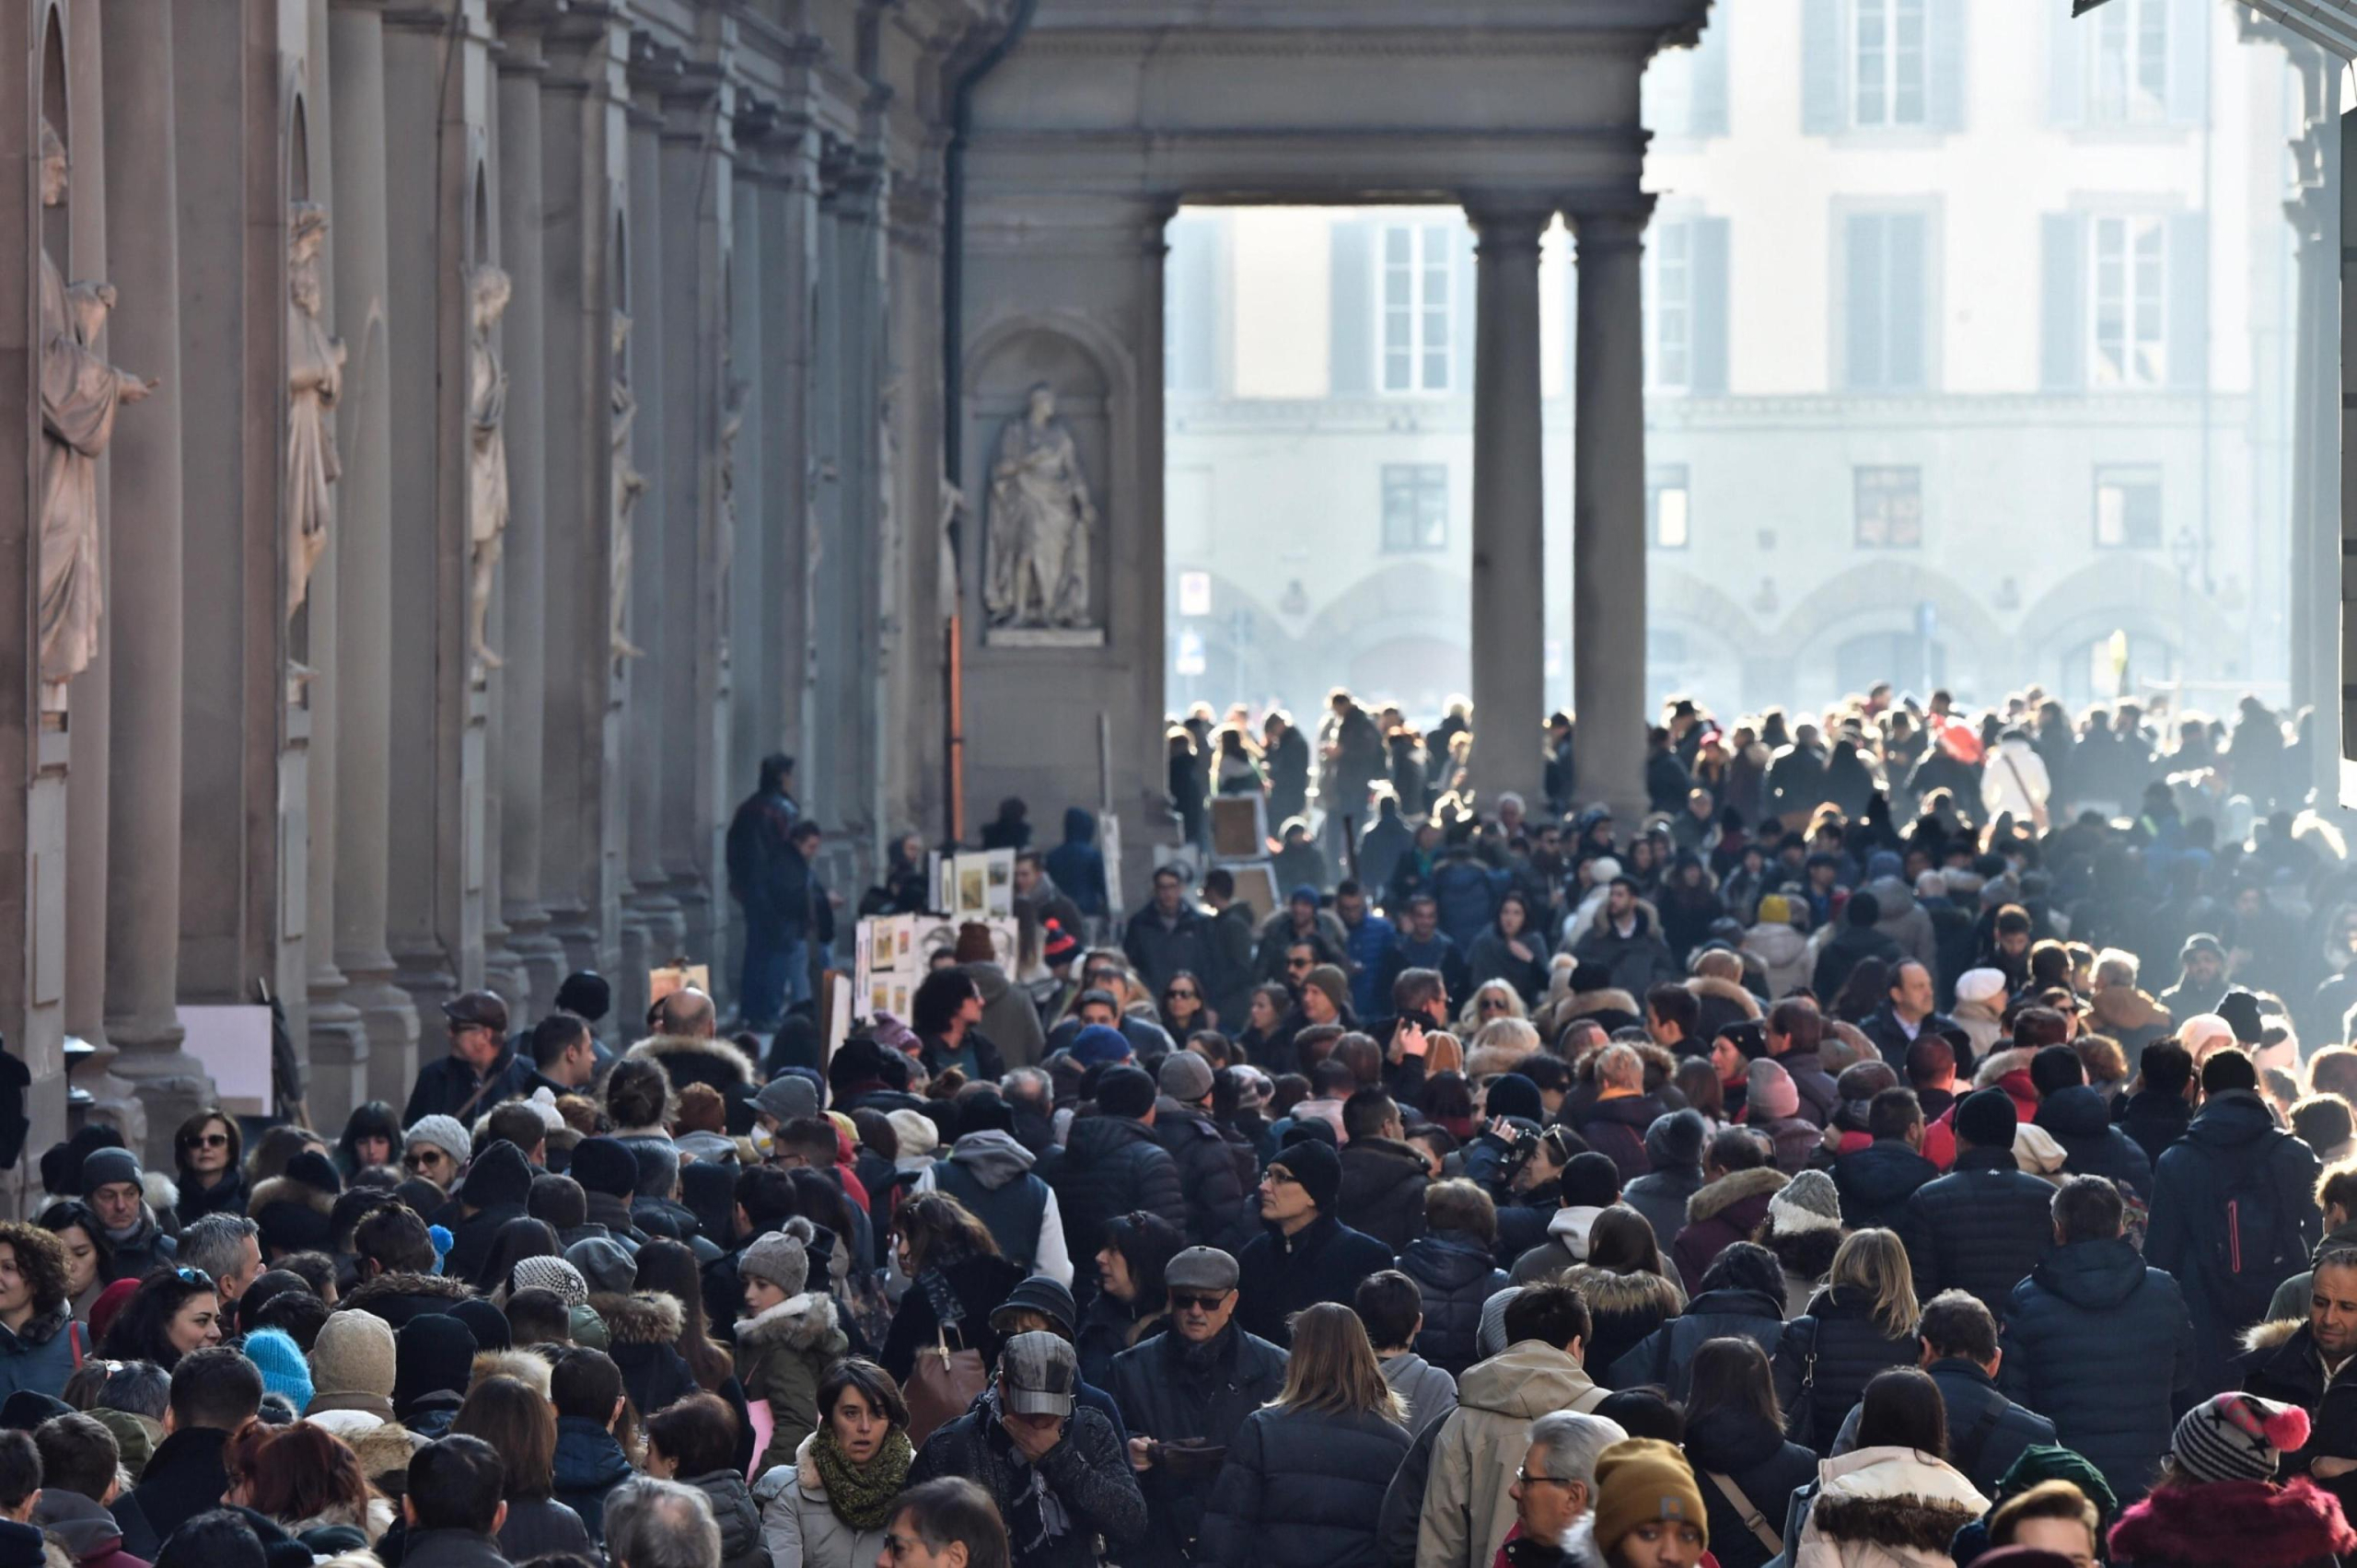 La coda di turisti per visitare la galleria degli Uffizi, Firenze, 01 gennaio 2017.
ANSA/MAURIZIO DEGL'INNOCENTI